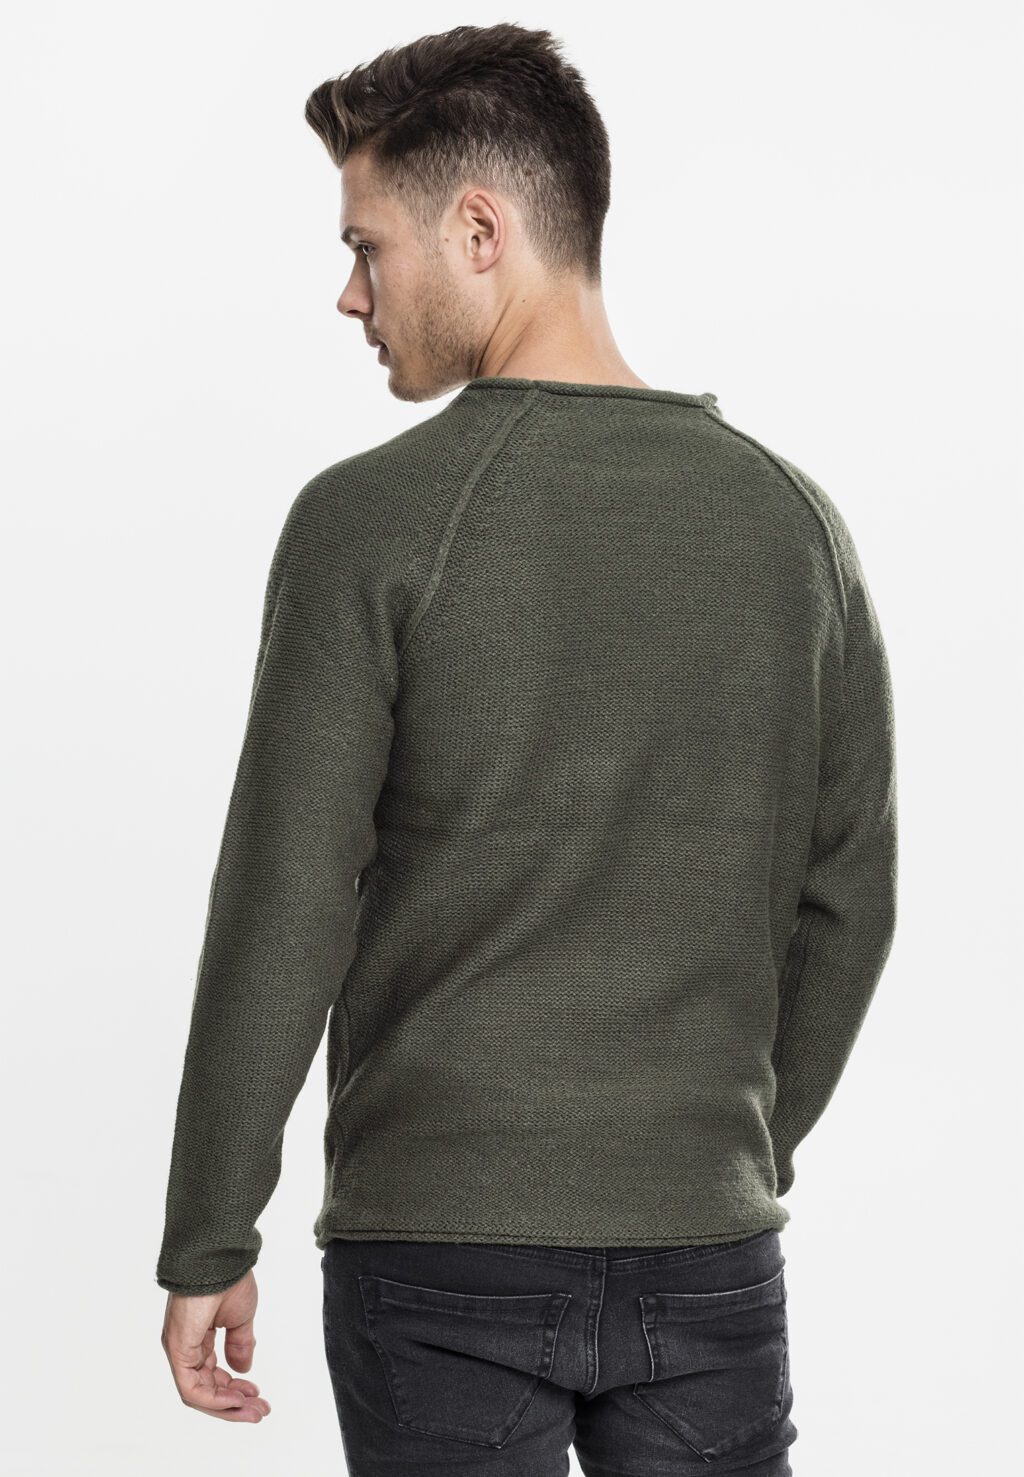 Urban Classics Raglan Wideneck Sweater olive TB1425